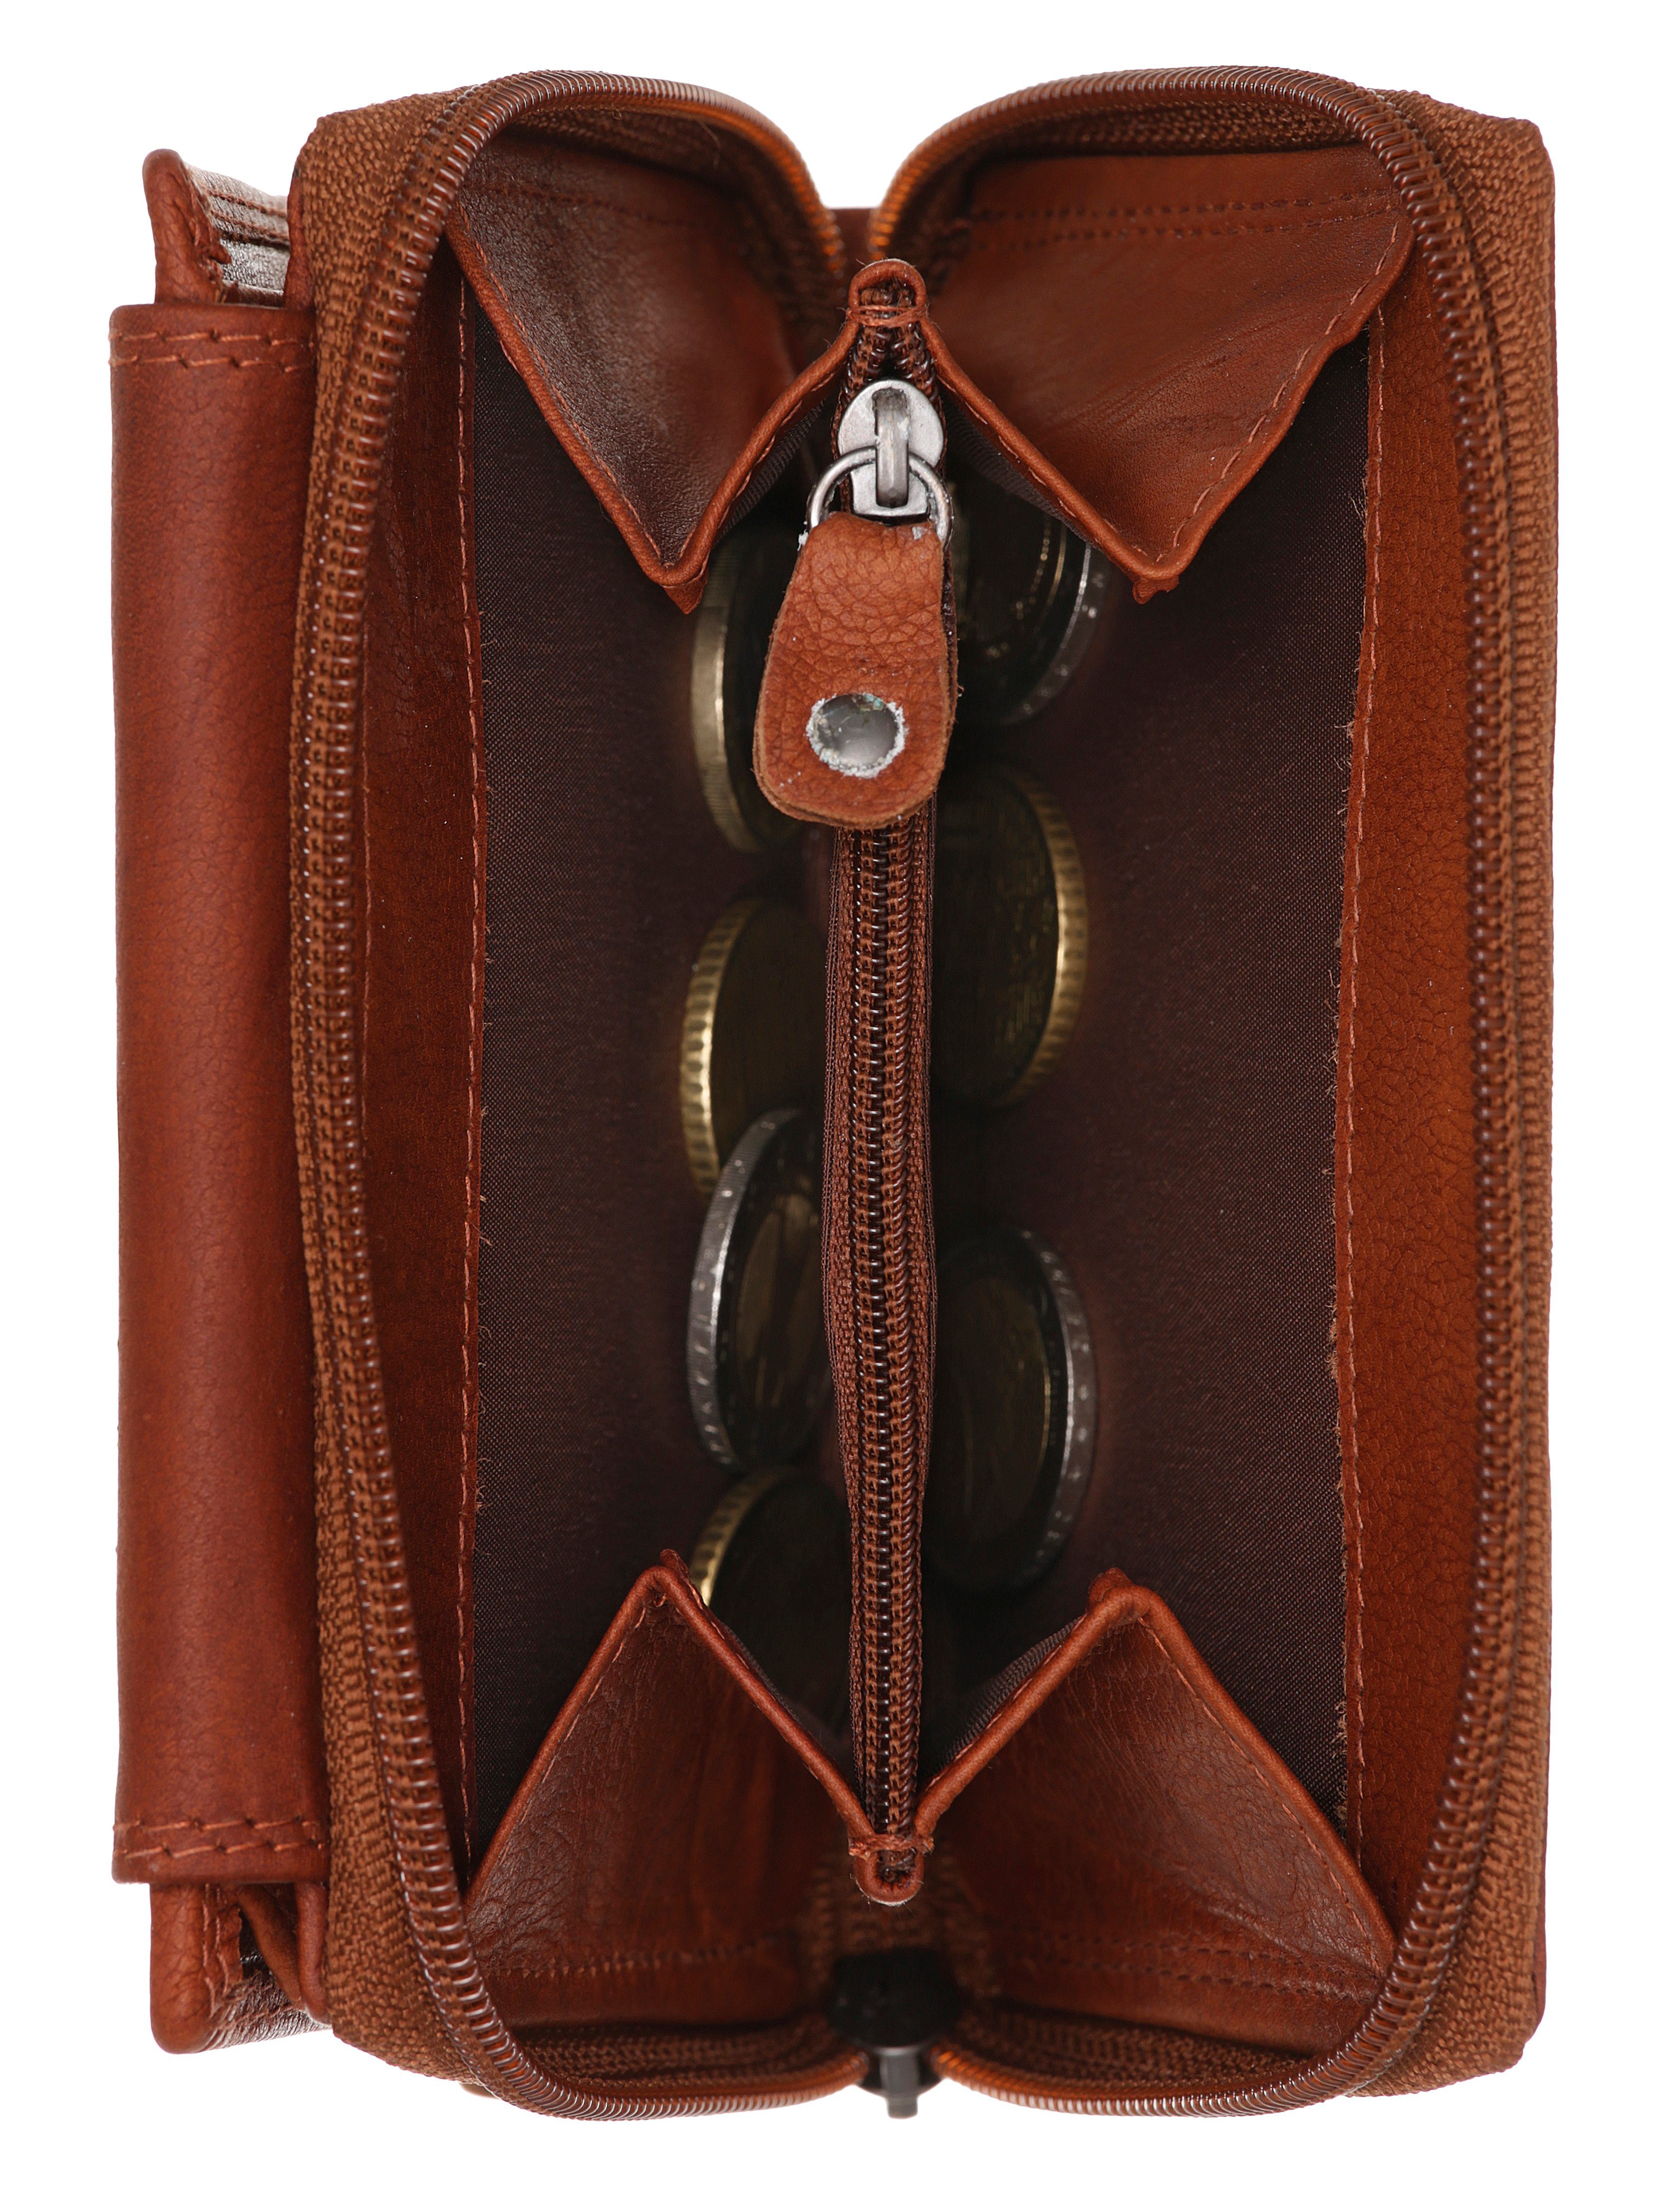 MUSTANG Geldbörse Udine wallet opening, leather im praktischen Format brown top